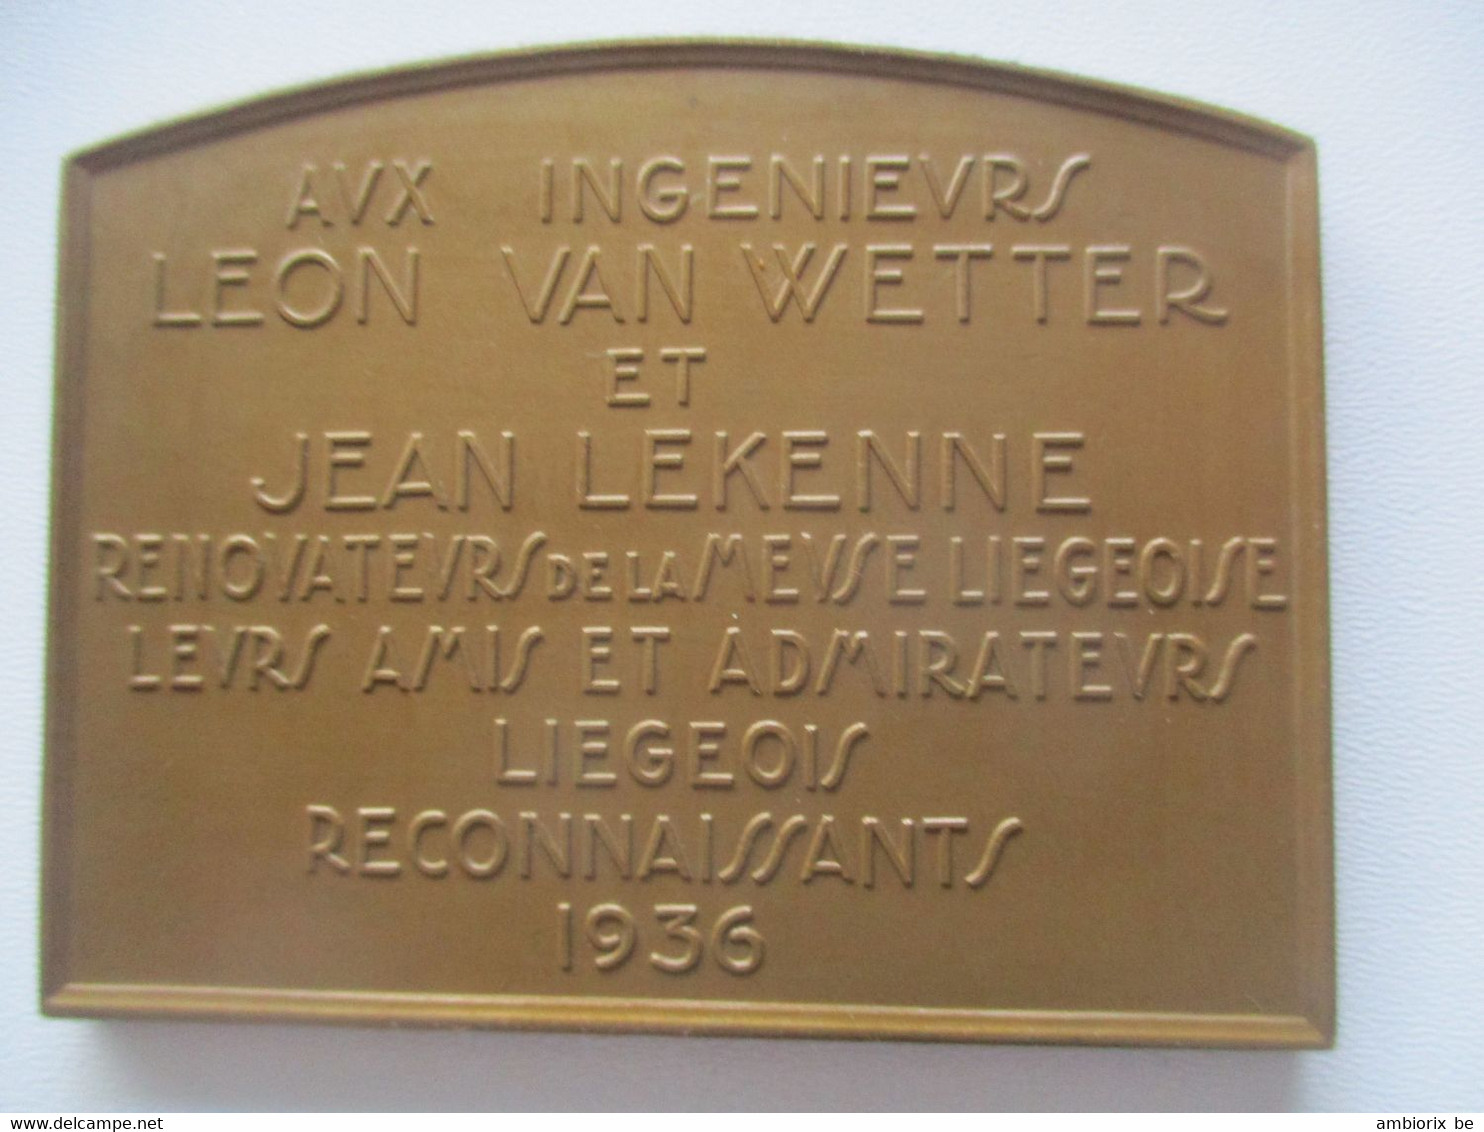 Le Barrage De Monsin à Liège - Aux Ingénieurs Léon Van Wetter Et Jean Lekenne - Touristisch